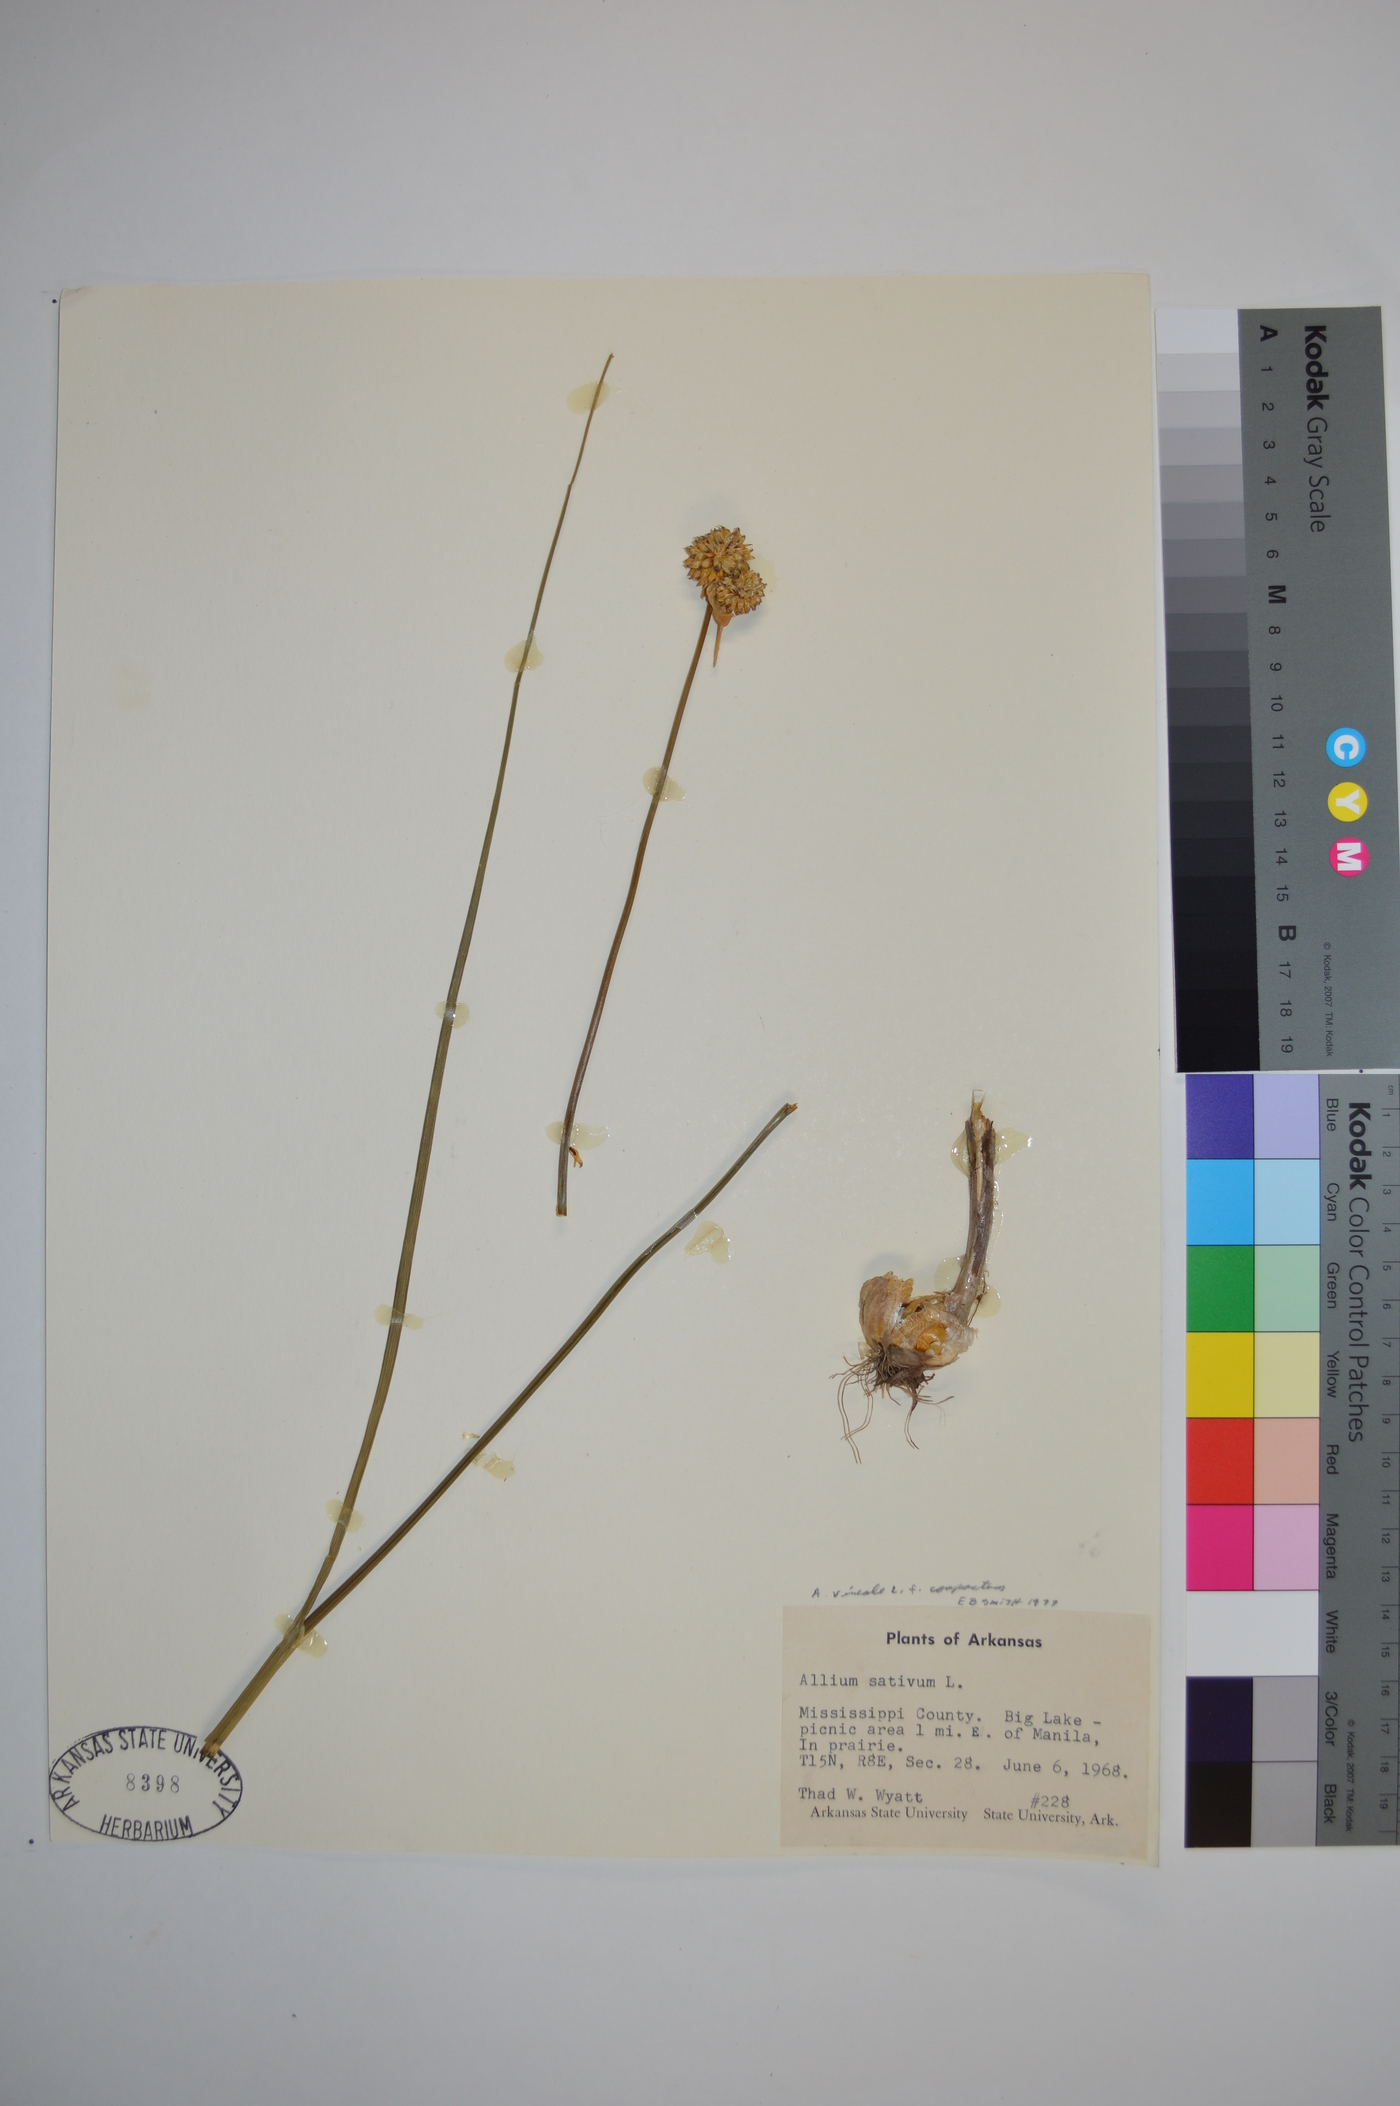 Allium vineale var. compactum image